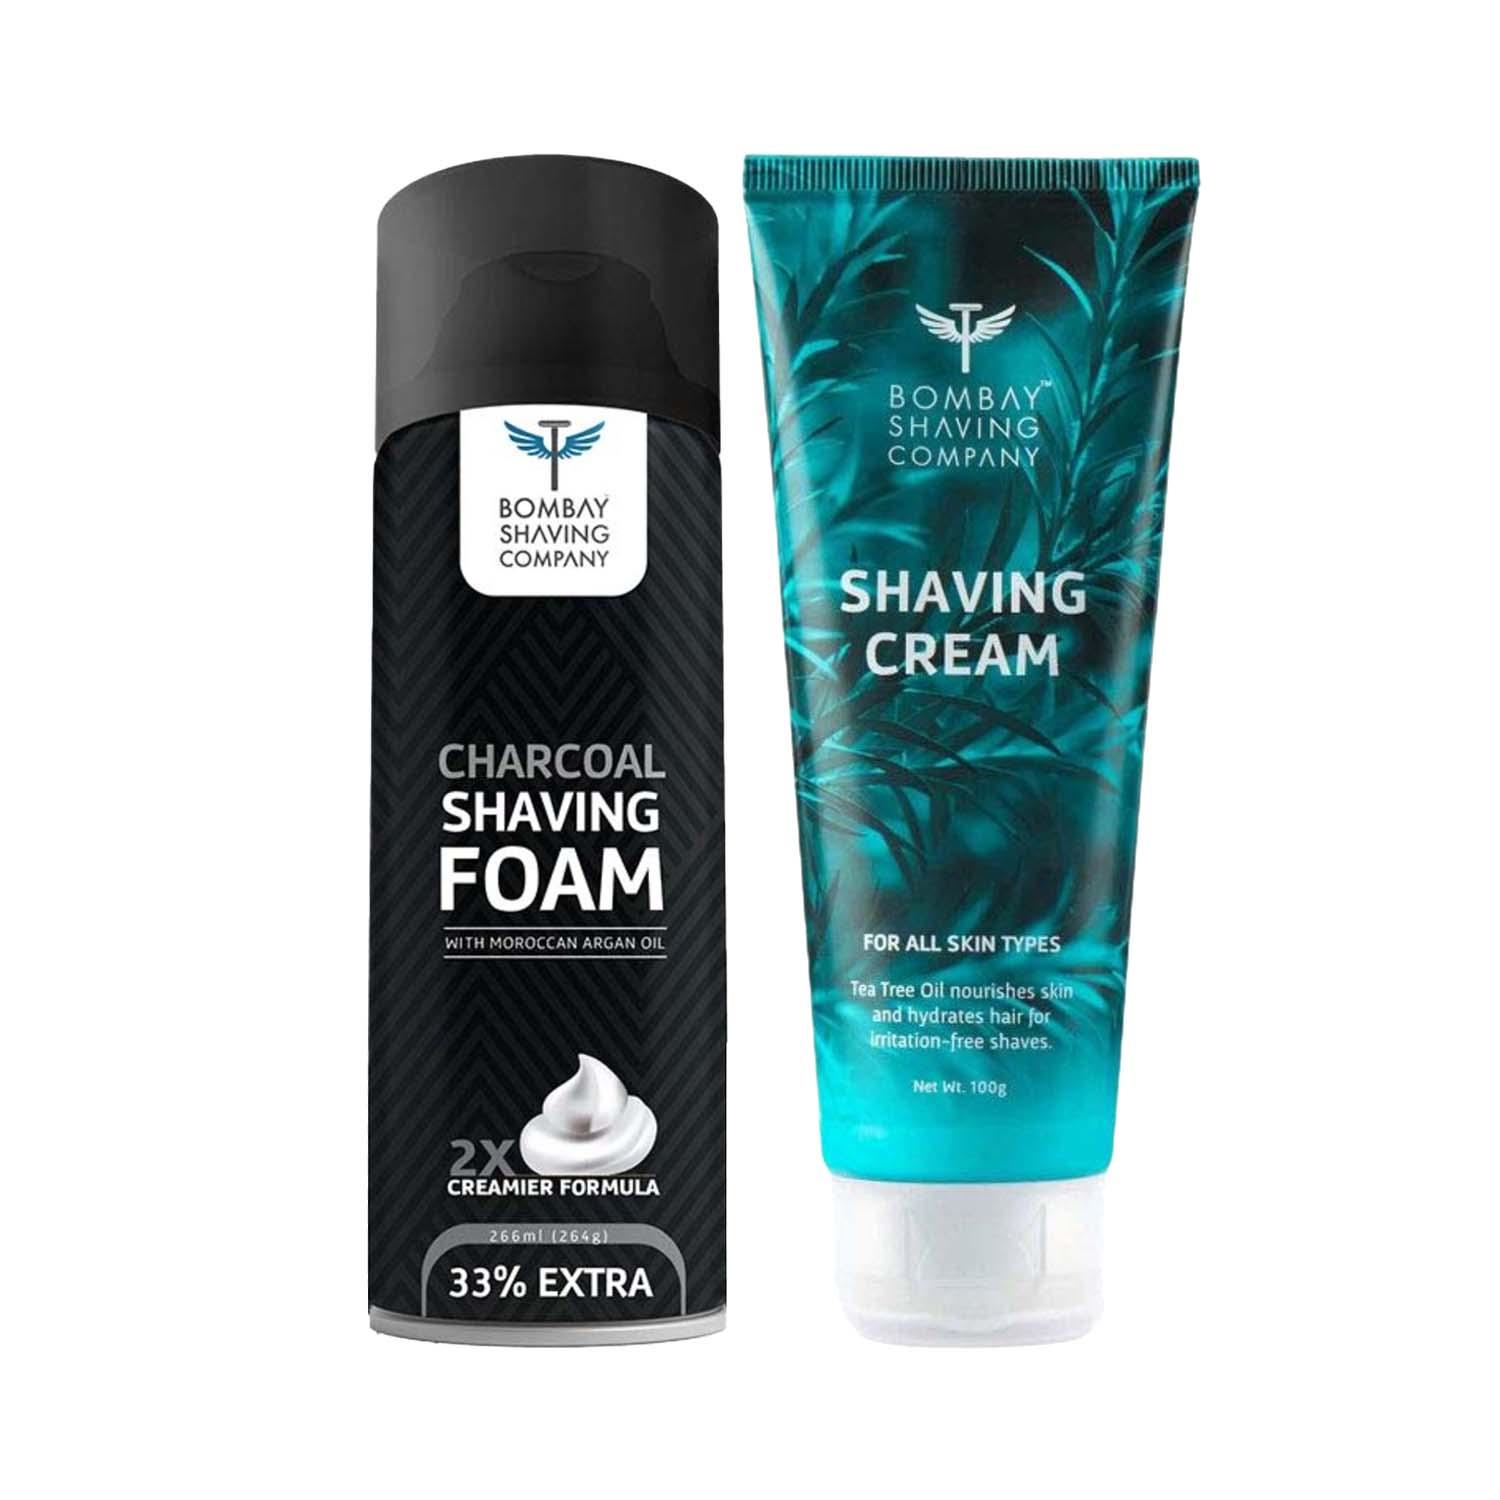 Bombay Shaving Company | Bombay Shaving Company Charcoal Shaving Foam (264 g) & Shaving Cream (100 g) Combo